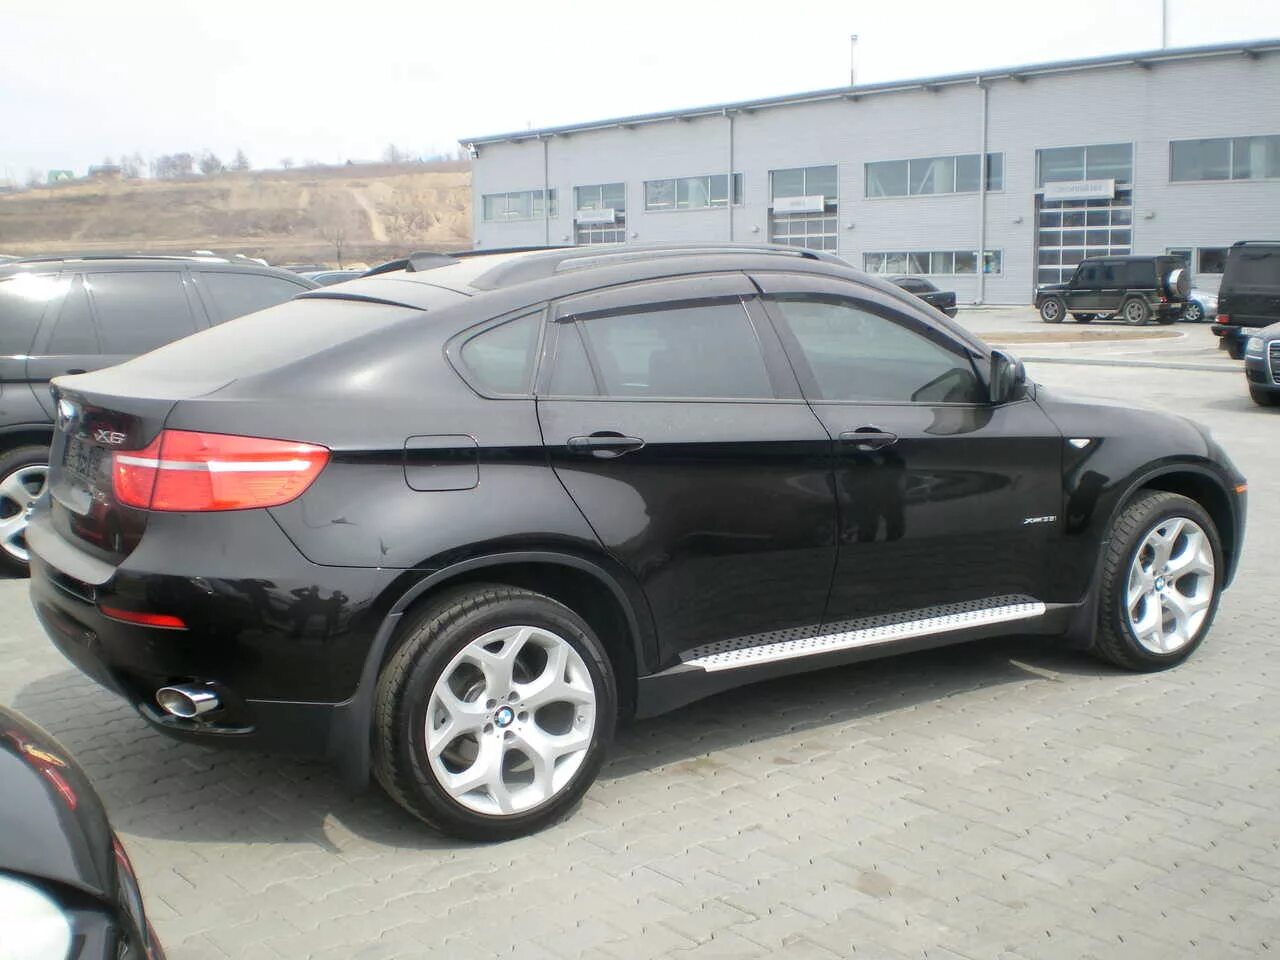 Продажа x6. BMW x6 2009 черная. БМВ x6 2005. БМВ Икс 6 черная. БМВ Икс 6 БМВ Икс 6.